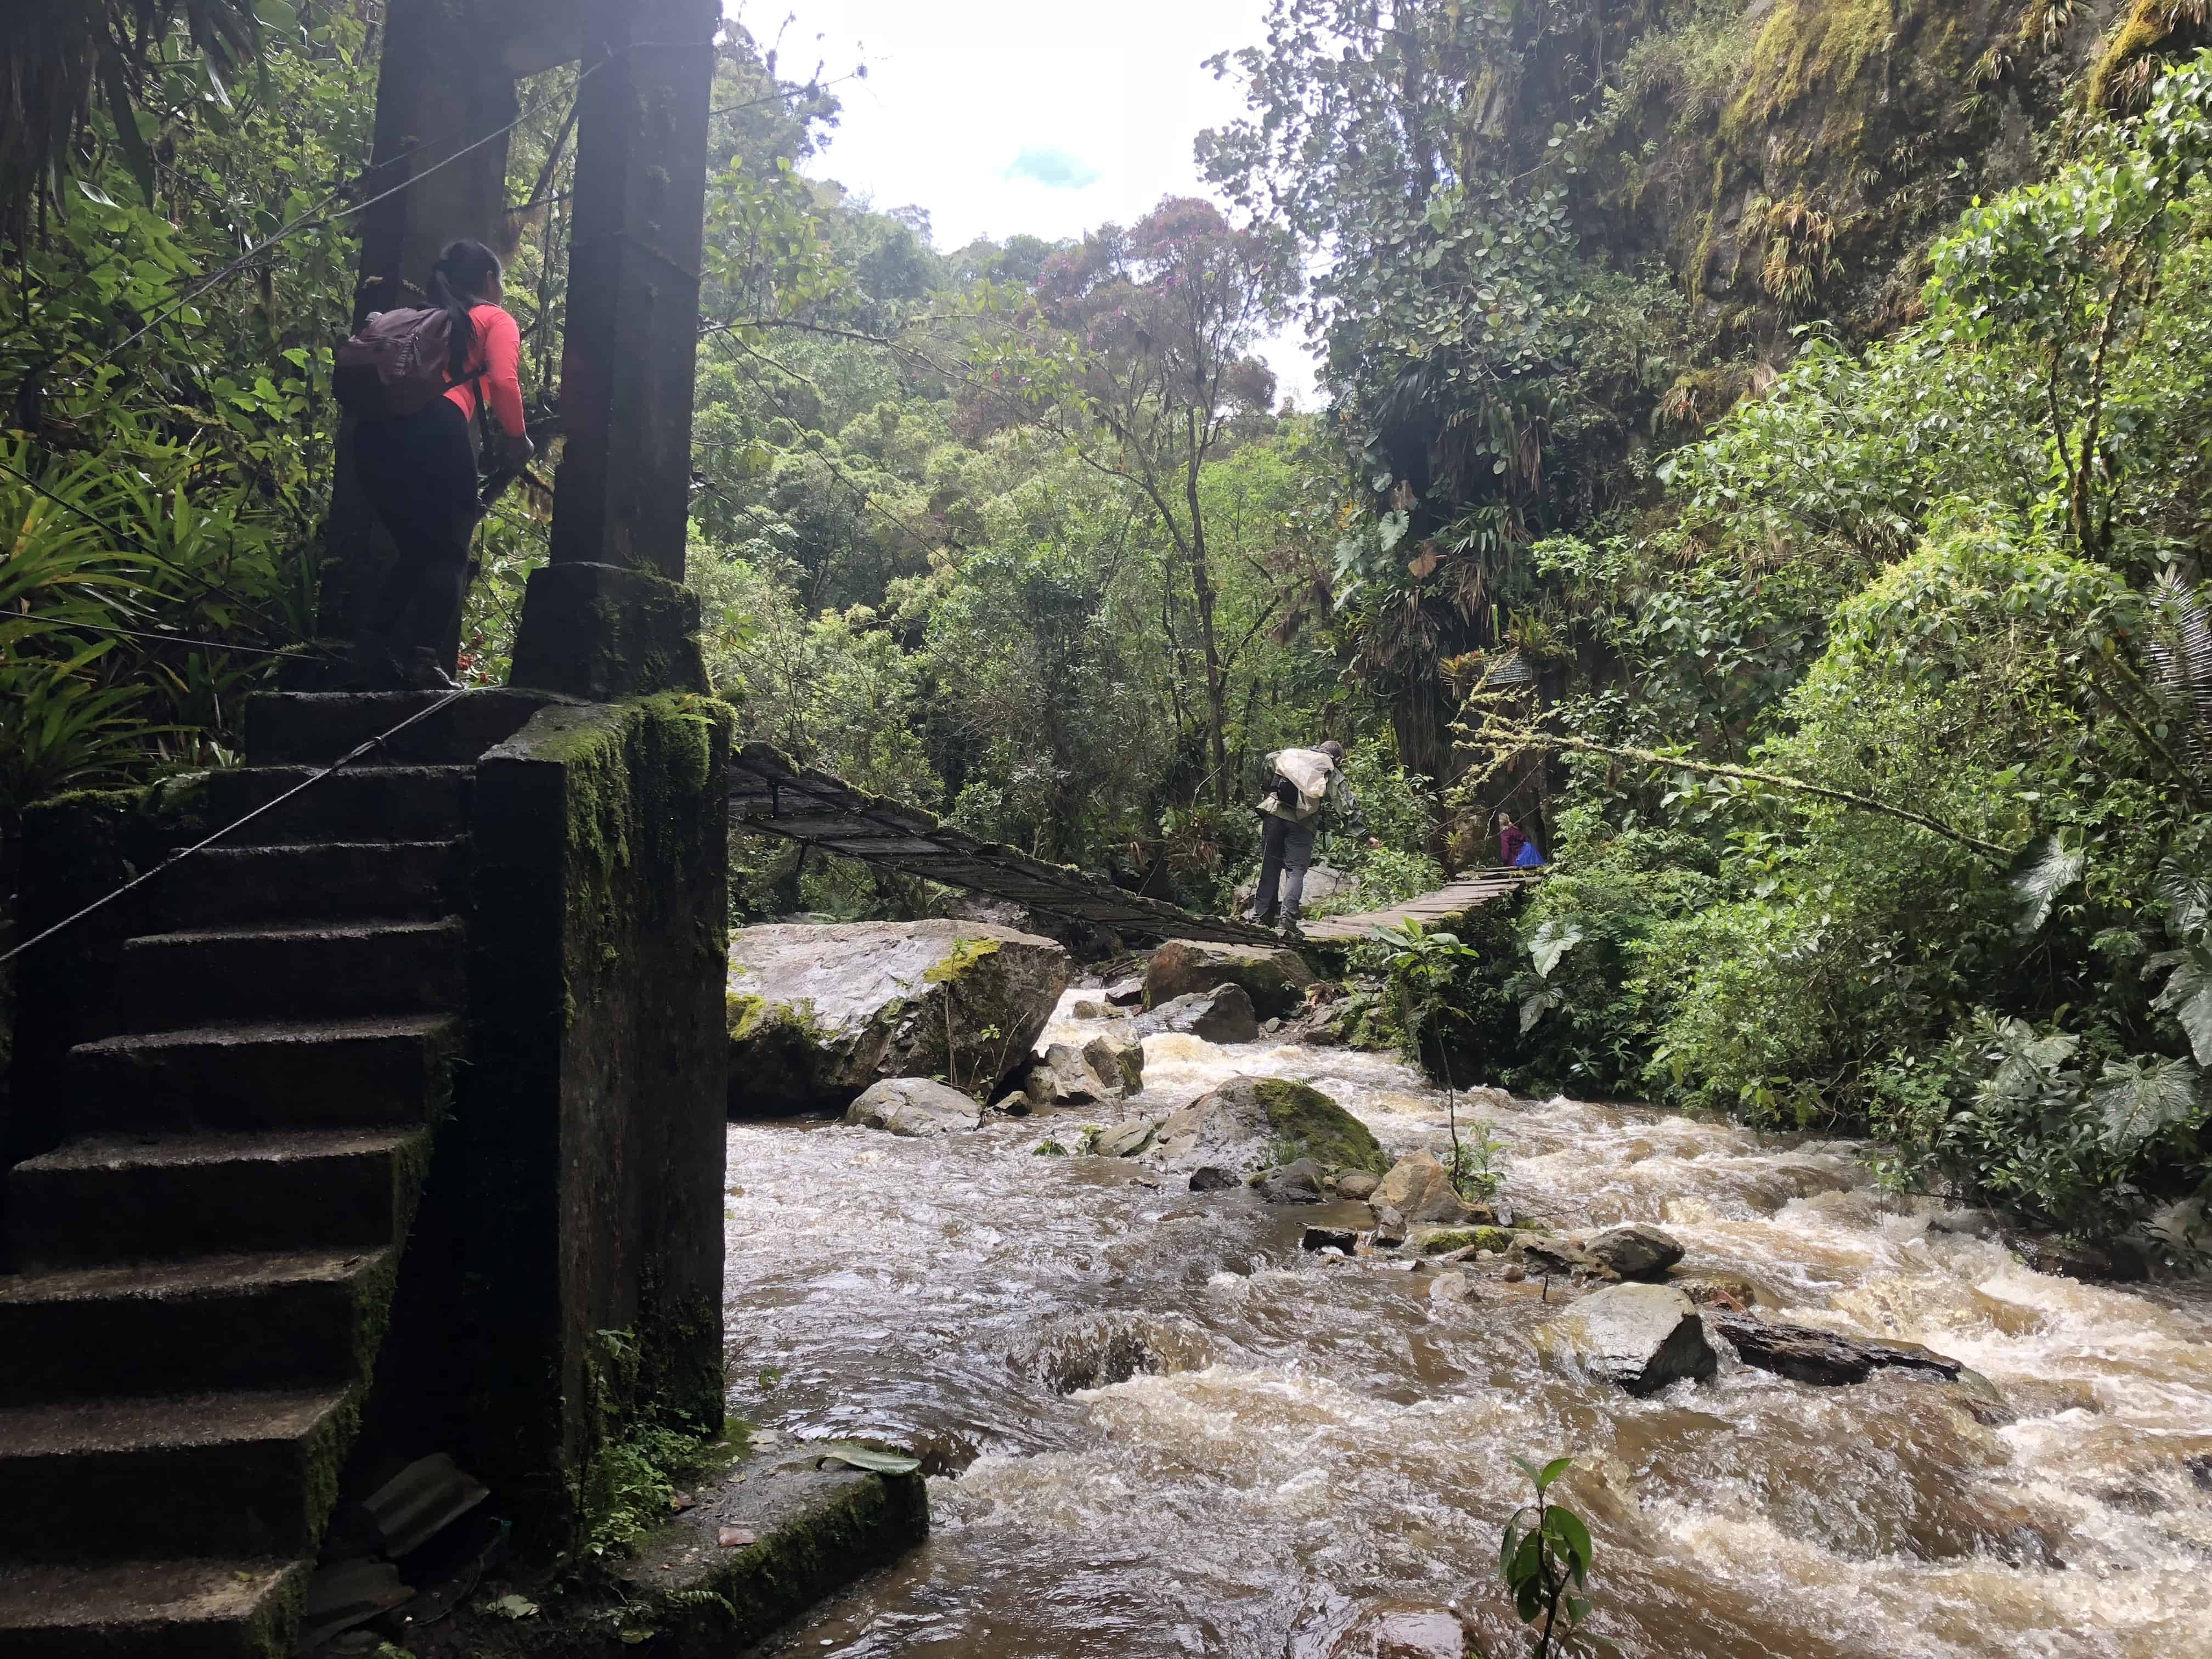 Suspension bridge at Cocora Valley in Quindío, Colombia